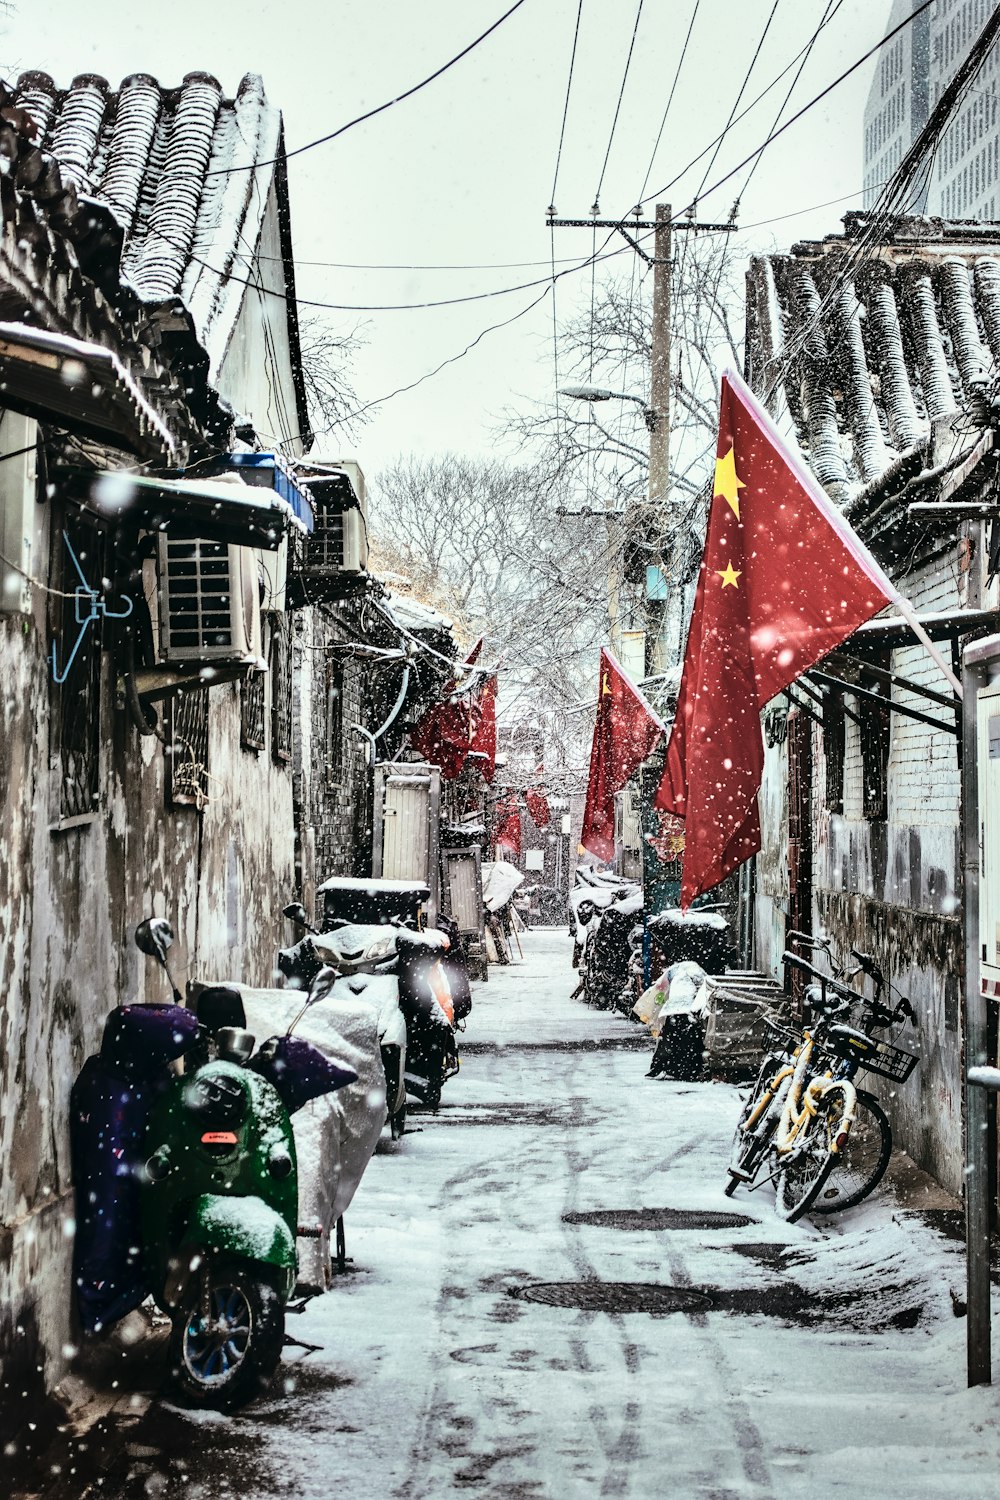 strade vuote coperte di neve durante il giorno